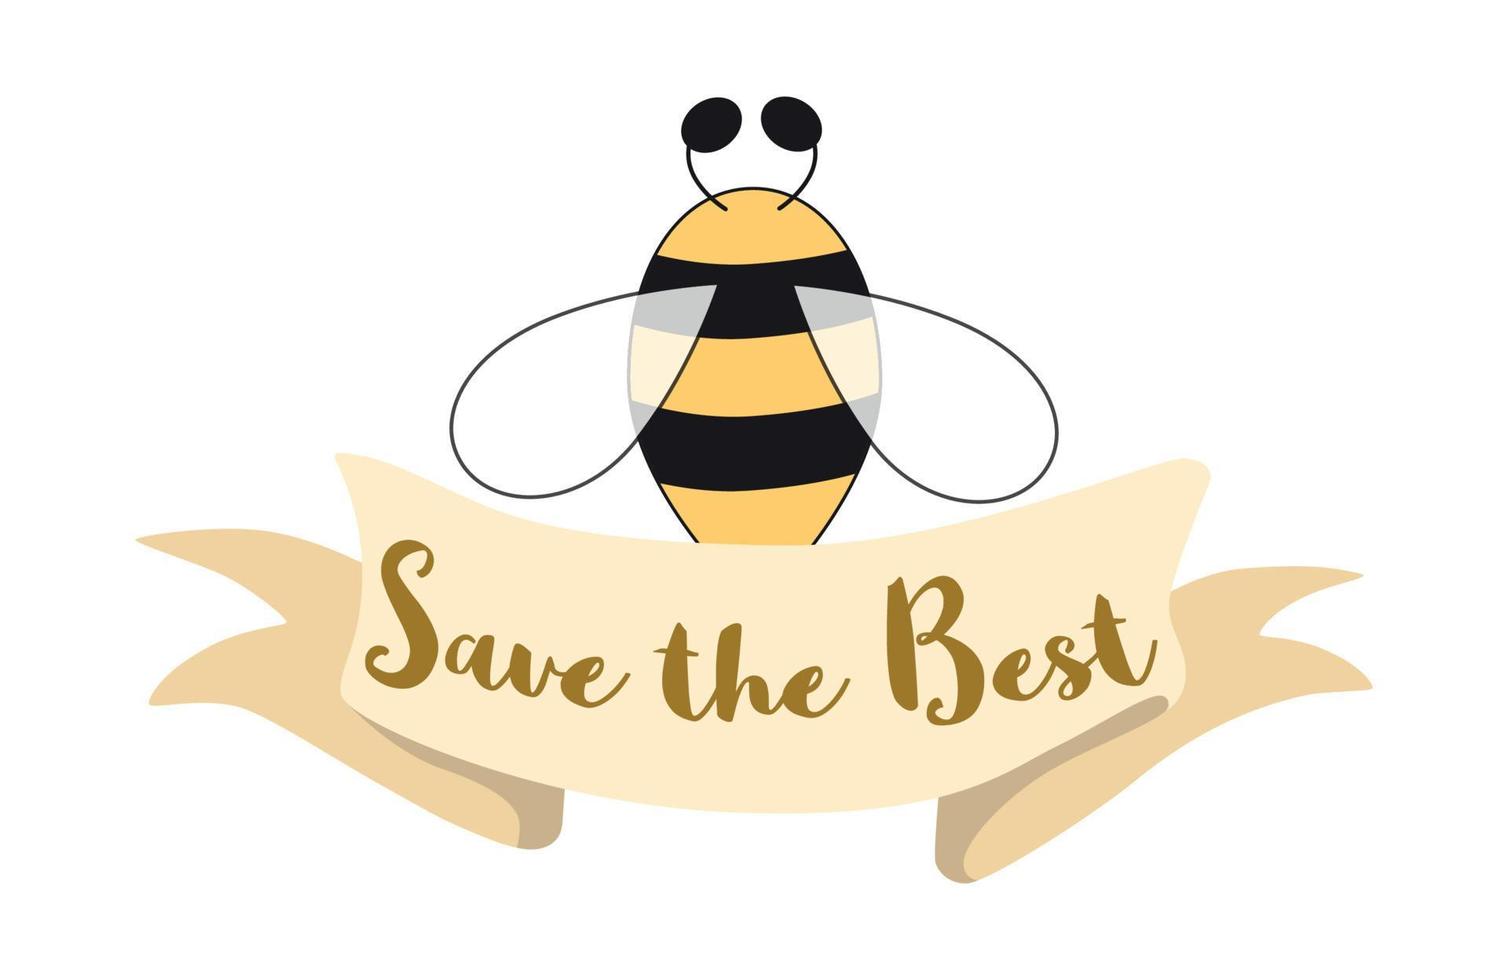 diseño de etiquetas de miel de abeja. concepto de productos de miel orgánica, diseño de paquetes. cinta con texto guardar lo mejor. lindo estampado dibujado a mano estilo de dibujos animados logotipo de apicultura, símbolo, póster. ilustración de abejorro. vector